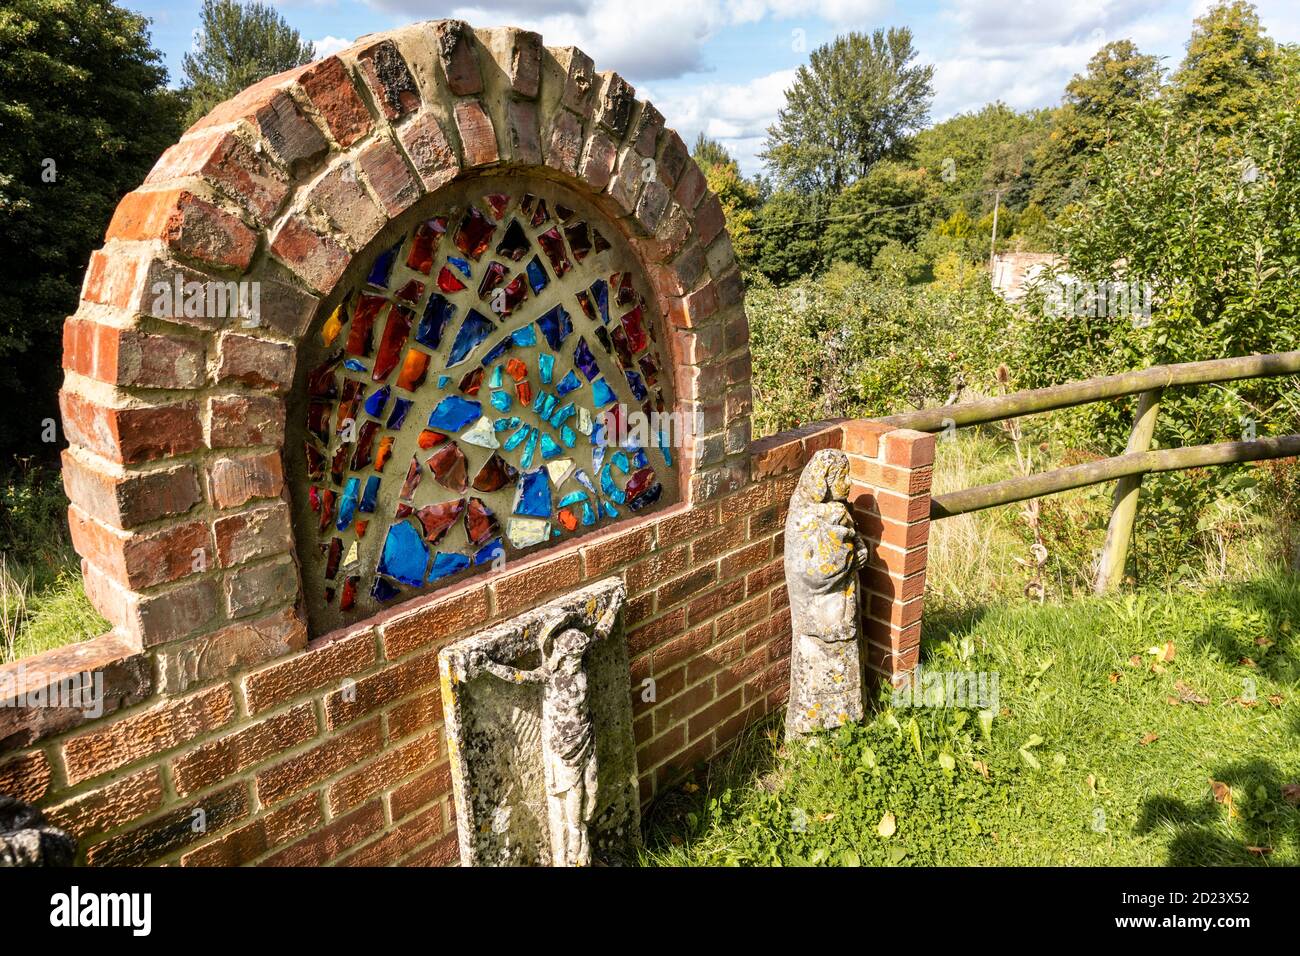 Un sanctuaire dans le jardin fortifié du monastère de Prinknash dans le domaine de l'abbaye de Prinknash sur les Cotswolds près de Upton St Leonards, Gloucestershire Royaume-Uni Banque D'Images